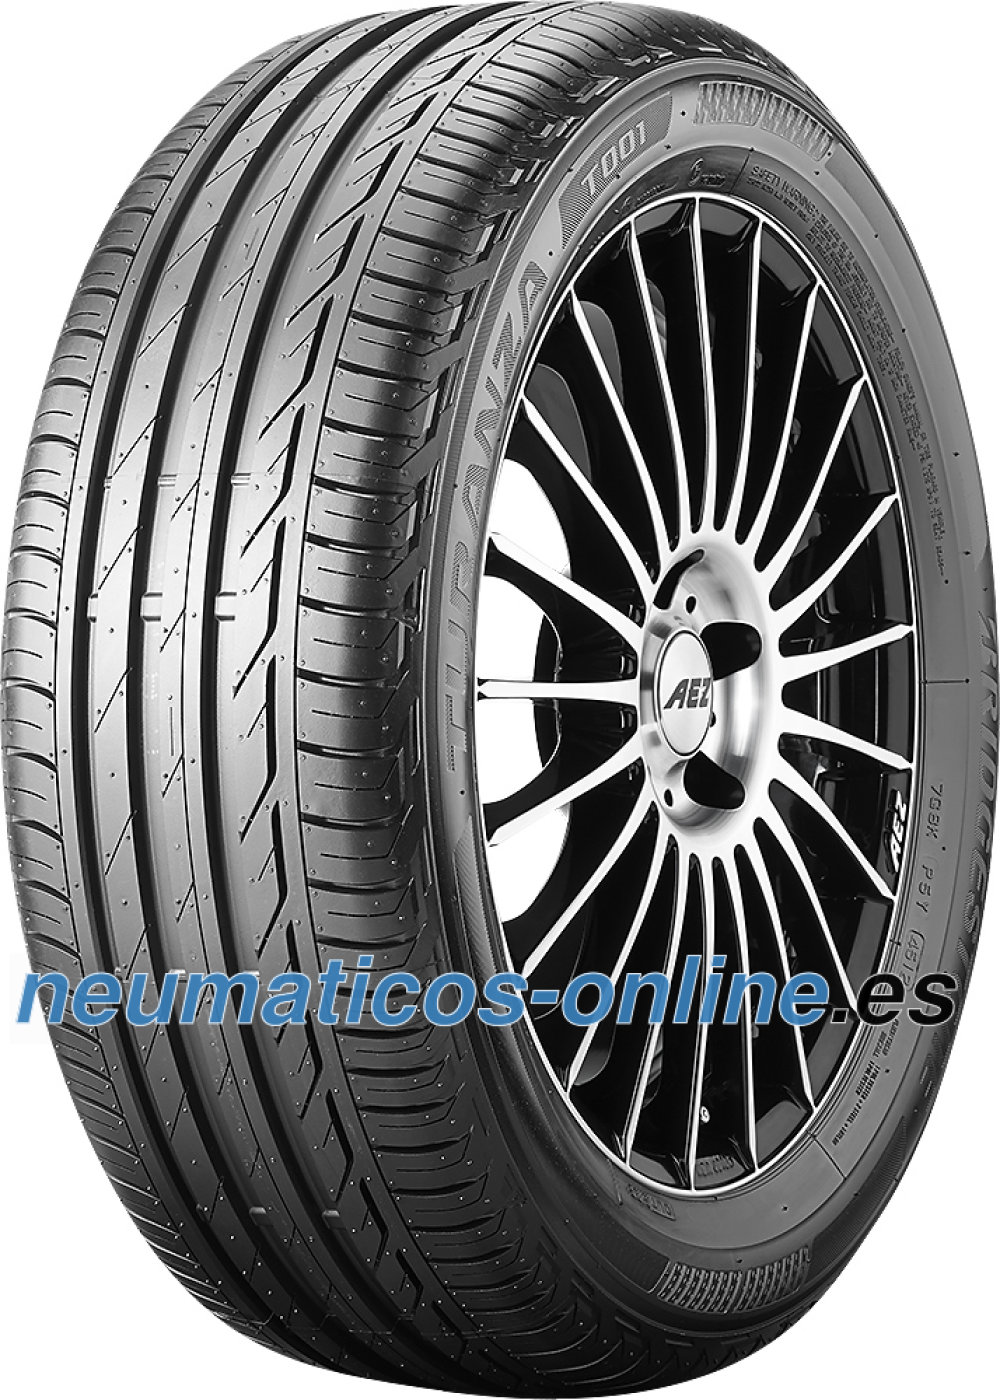 Bridgestone Turanza T001 205/55 R16 neumaticos-online.es